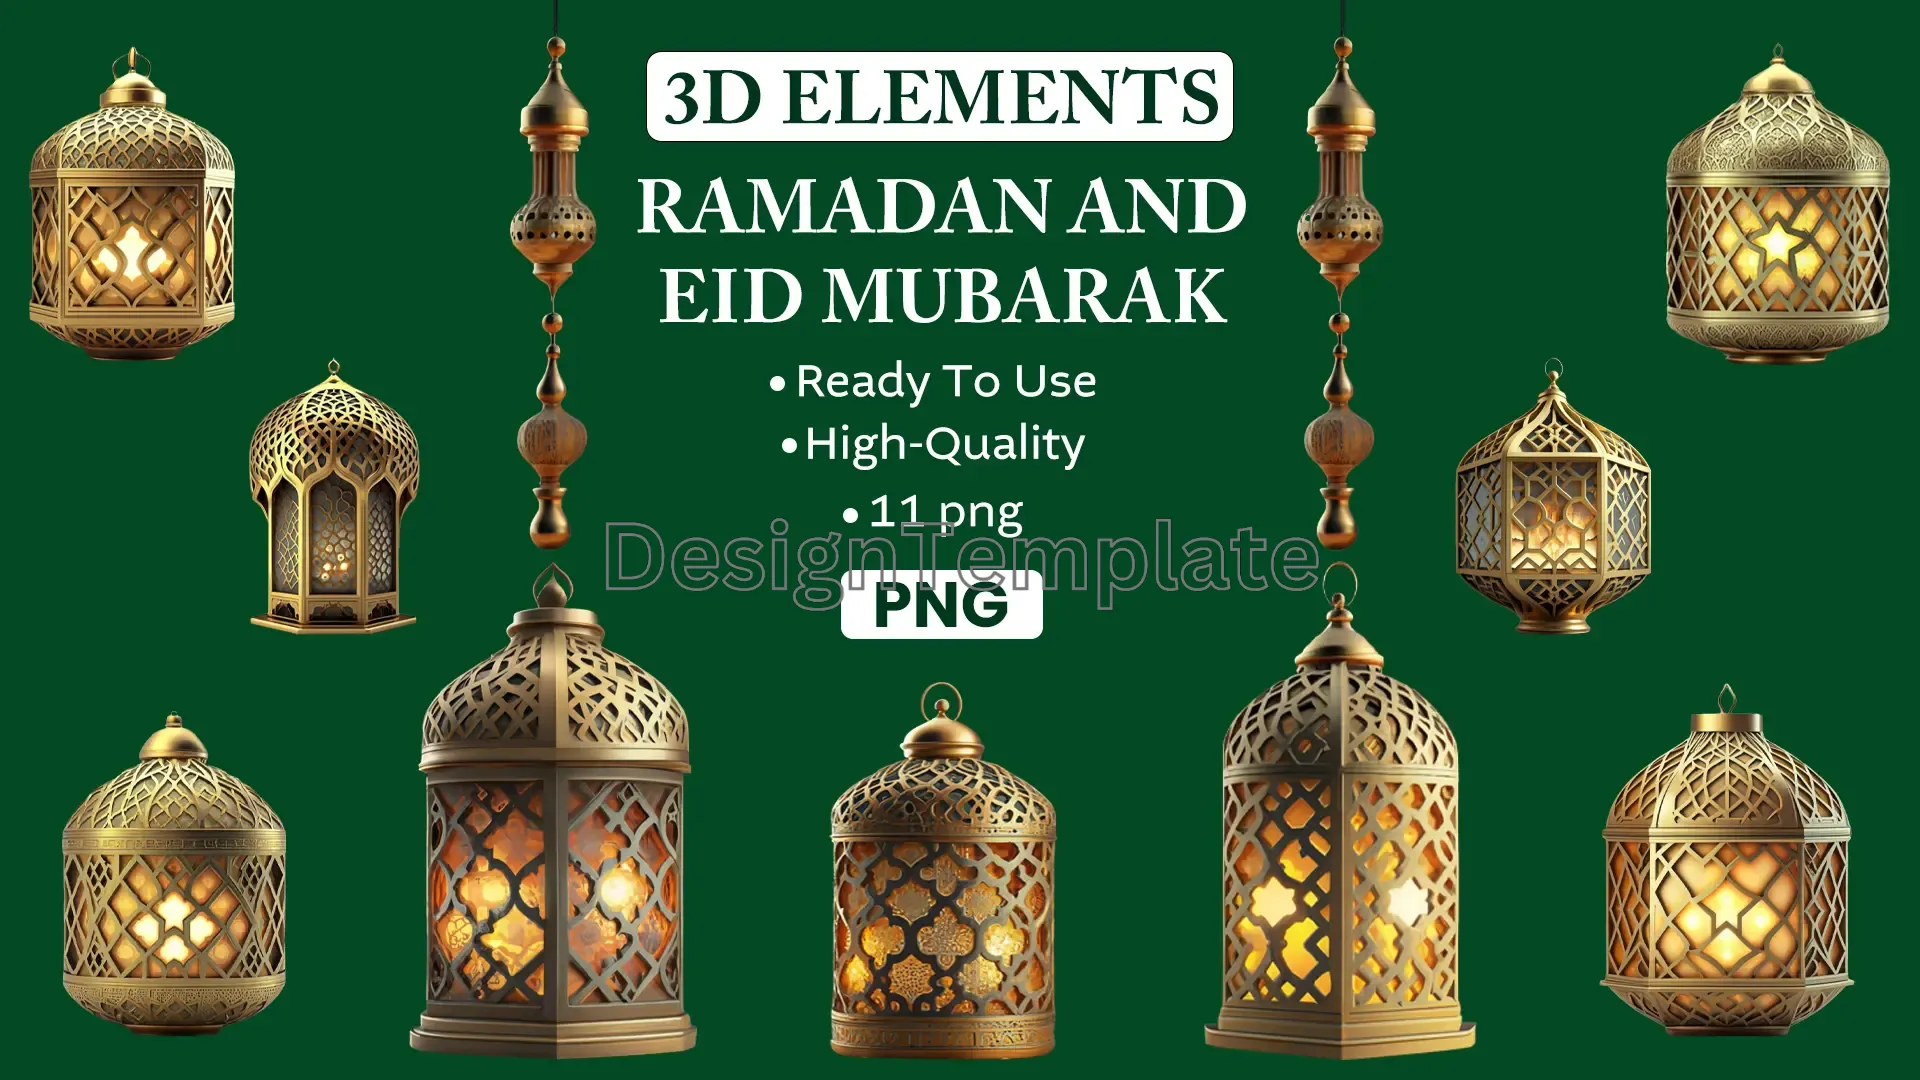 Luxurious Golden 3D Ramadan Elements for Cards